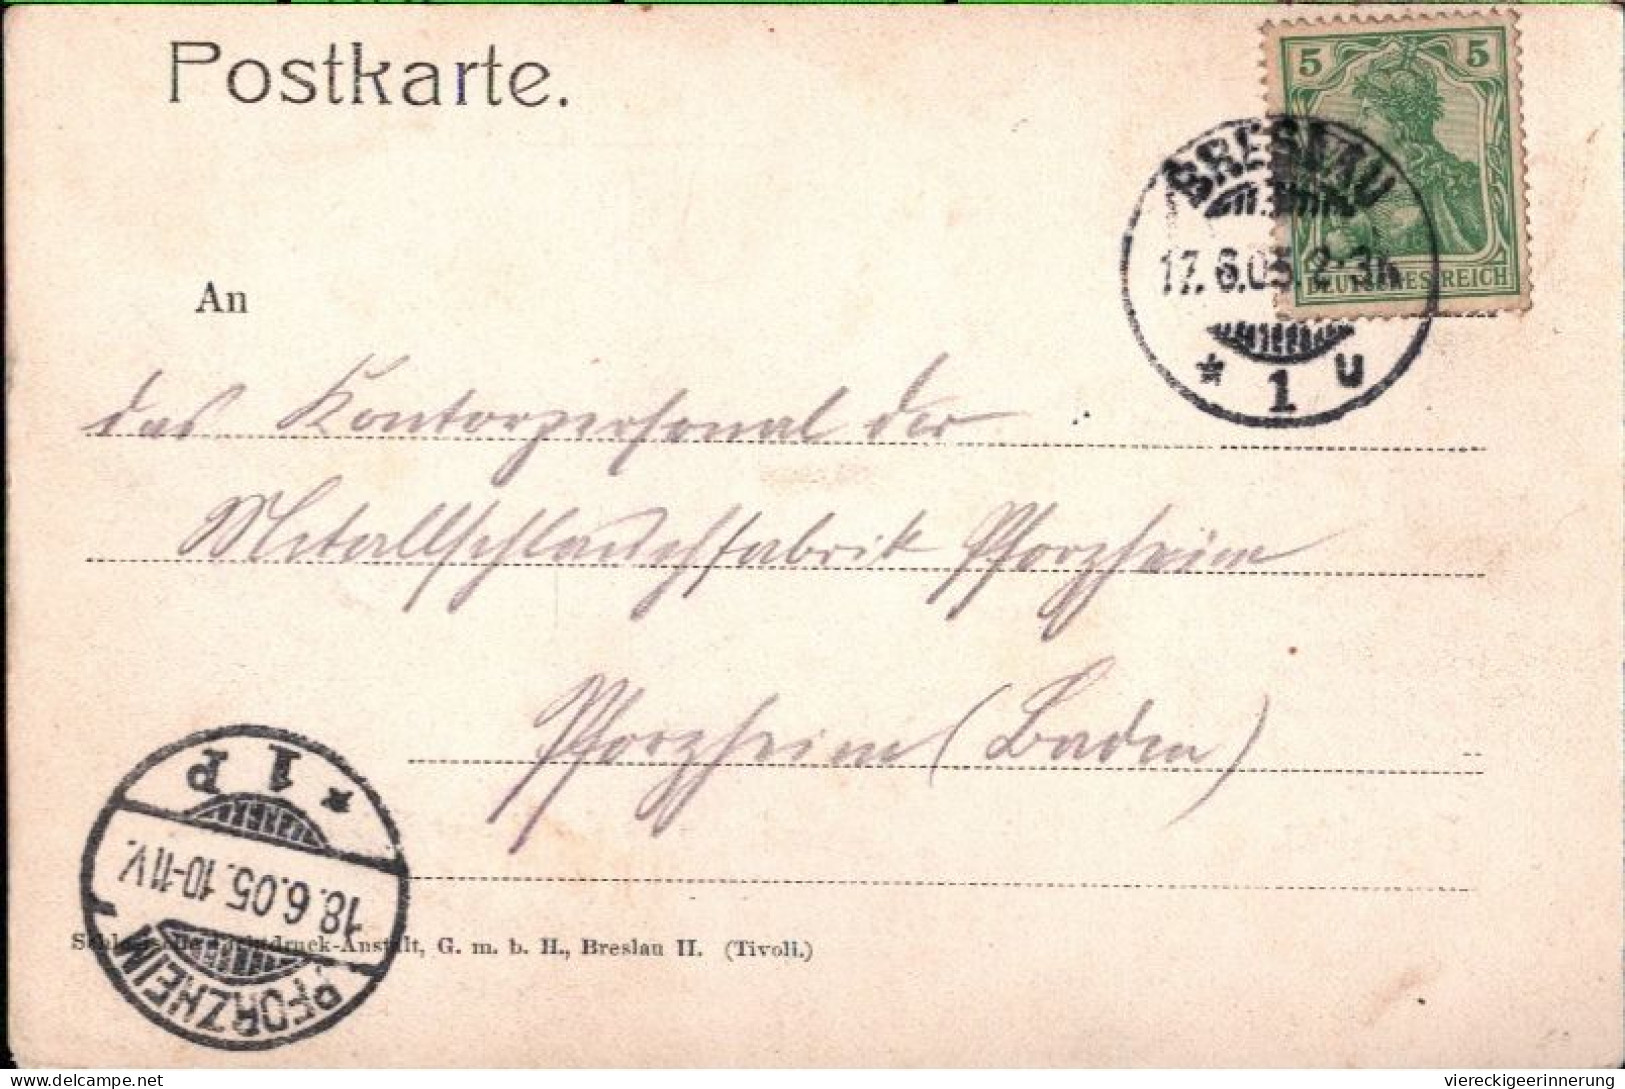 ! Breslau , Wroclaw, Oberschlesien, Kaiser Wilhelm Strasse, 1905, Alte Ansichtskarte - Poland